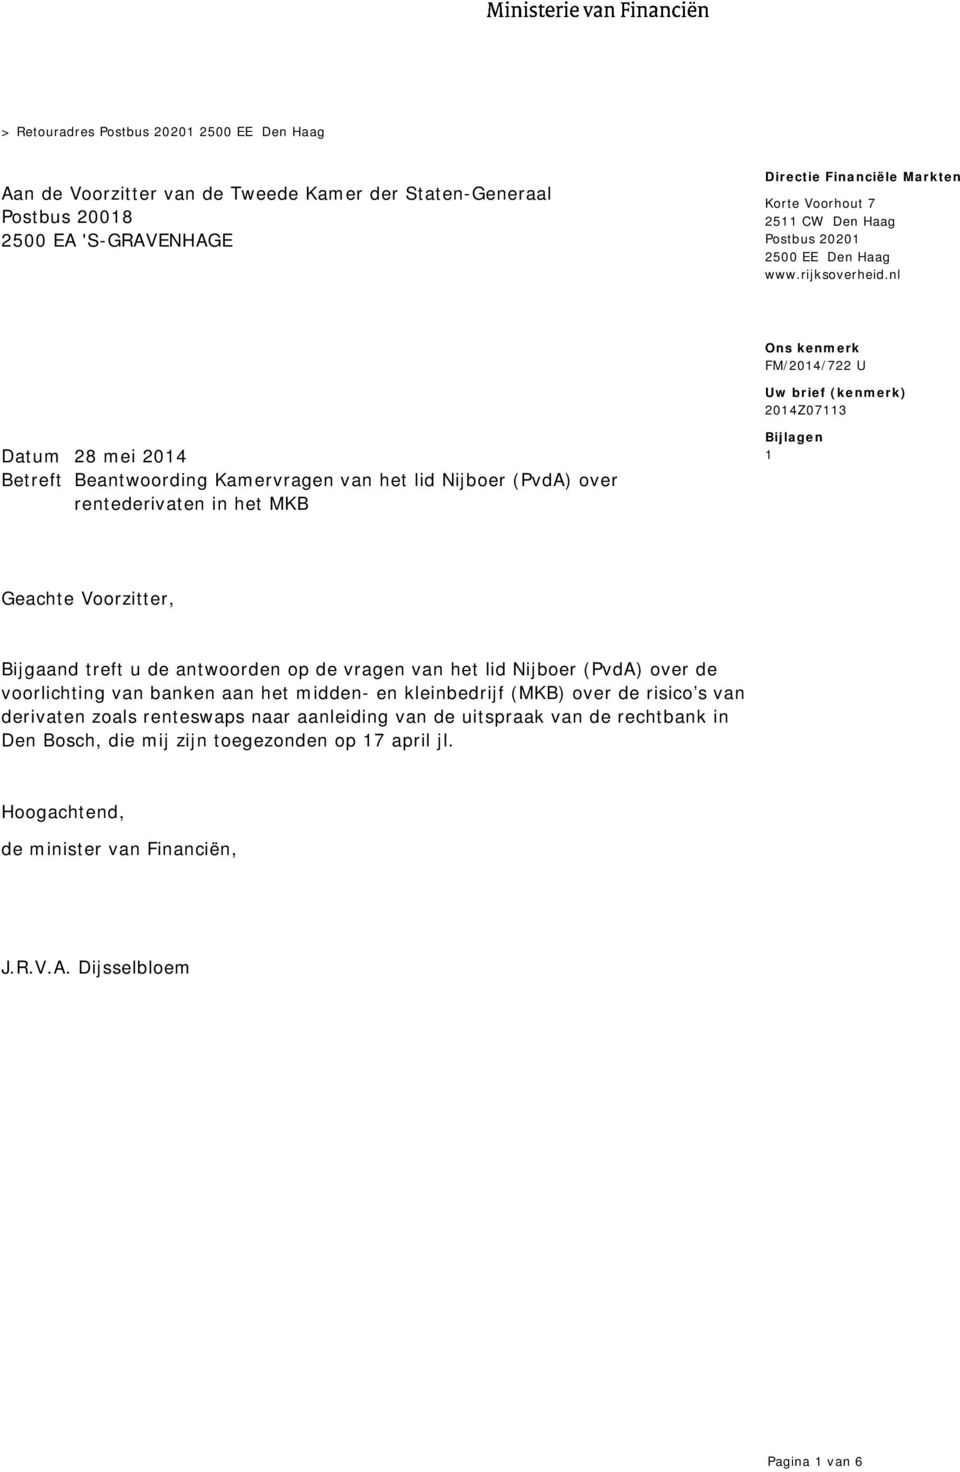 nl Uw brief (kenmerk) 2014Z07113 Datum 28 mei 2014 Betreft Beantwoording Kamervragen van het lid Nijboer (PvdA) over rentederivaten in het MKB Bijlagen 1 Geachte Voorzitter, Bijgaand treft u